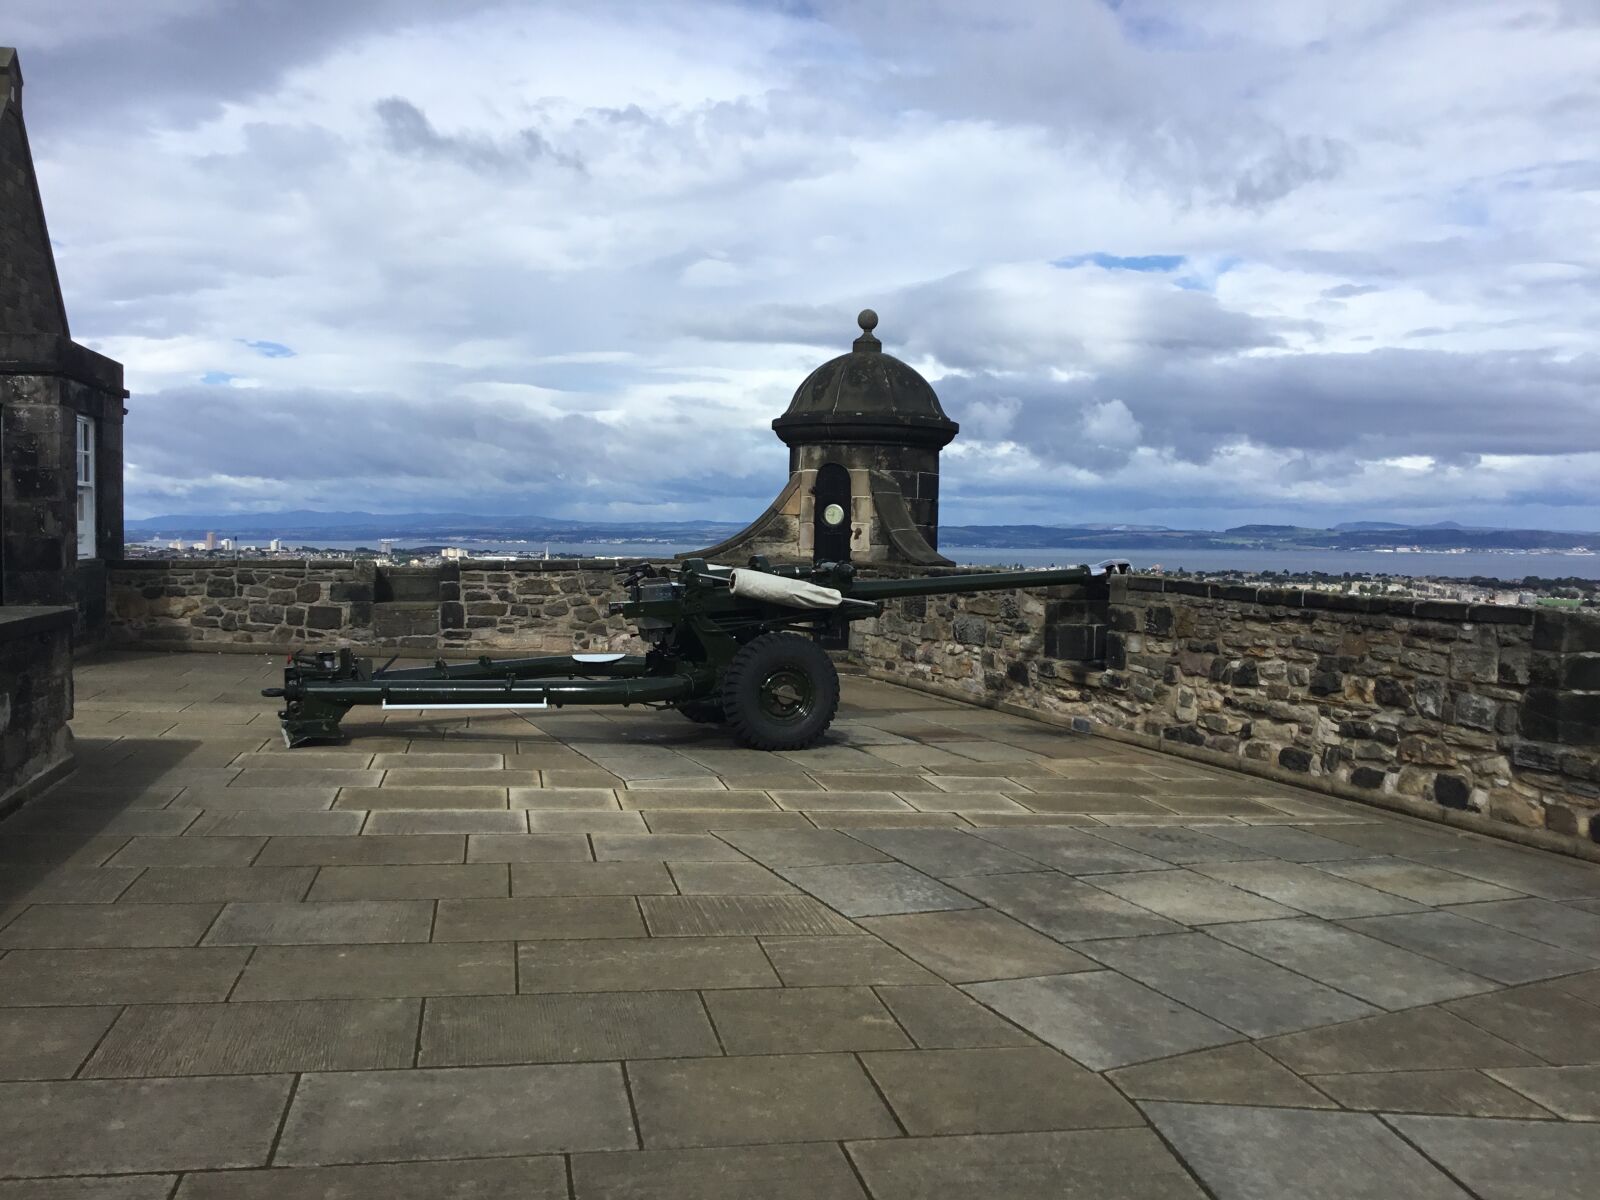 Apple iPad sample photo. Army, cannon, castle, edinburgh photography